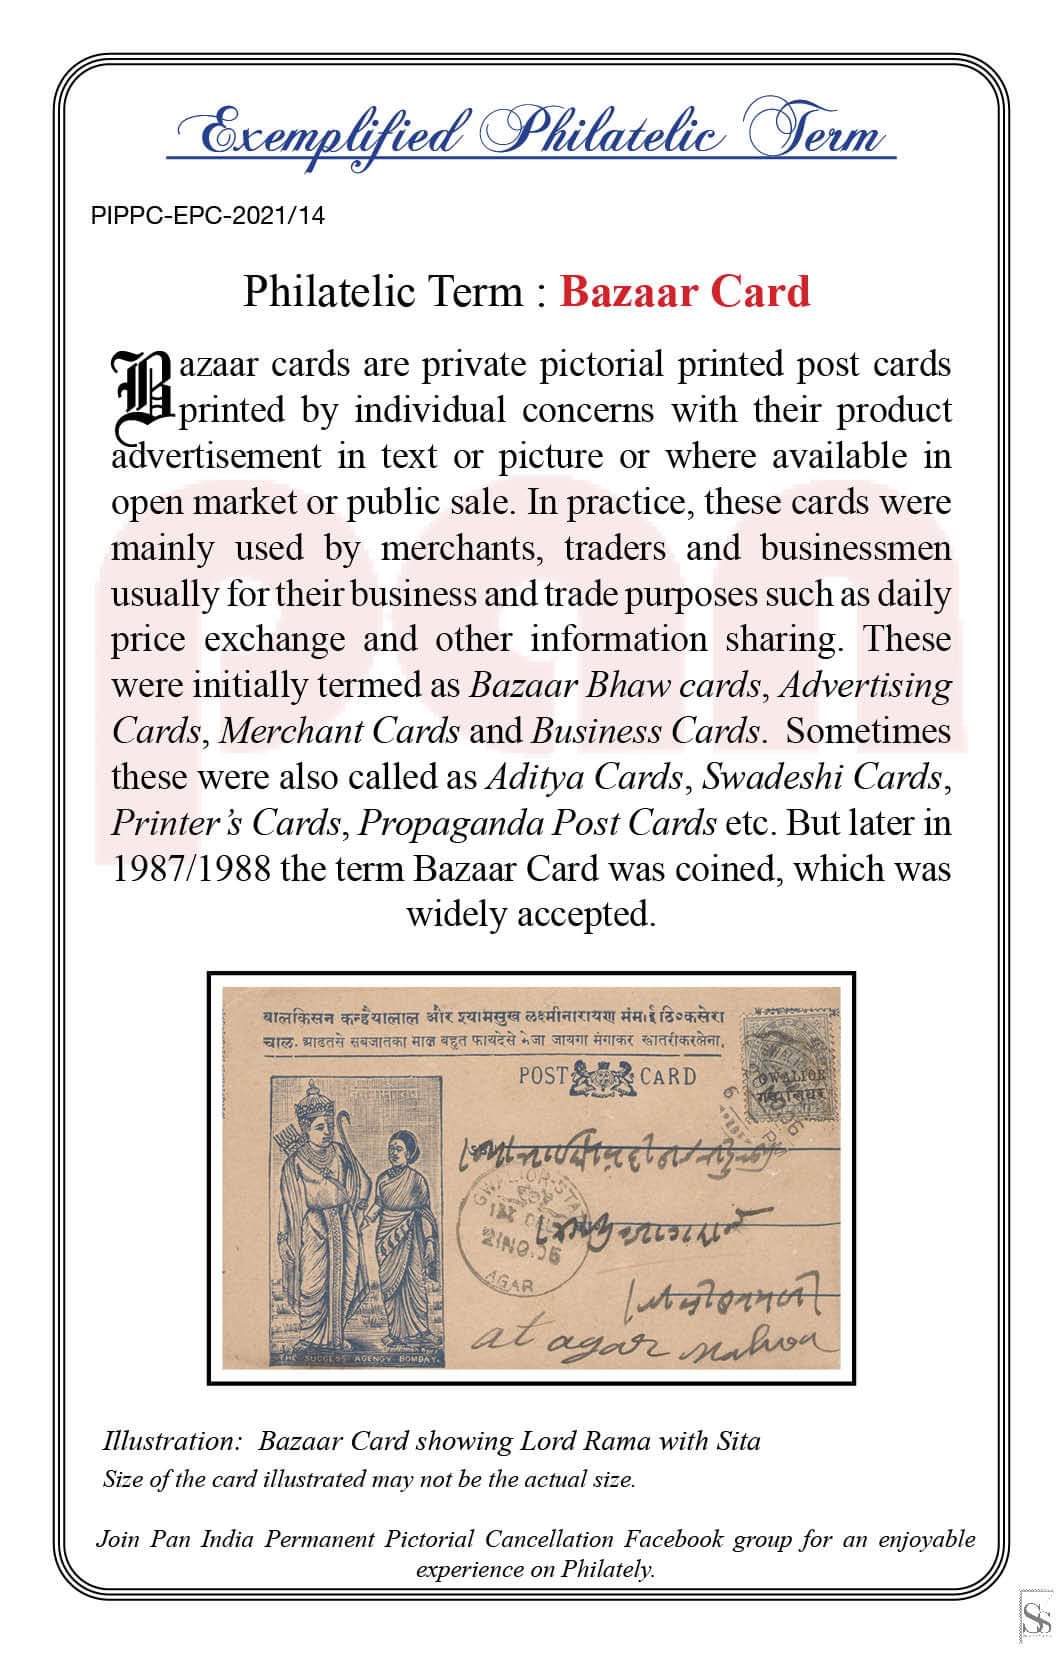 14. Today's exemplified philatelic term-Bazaar Card